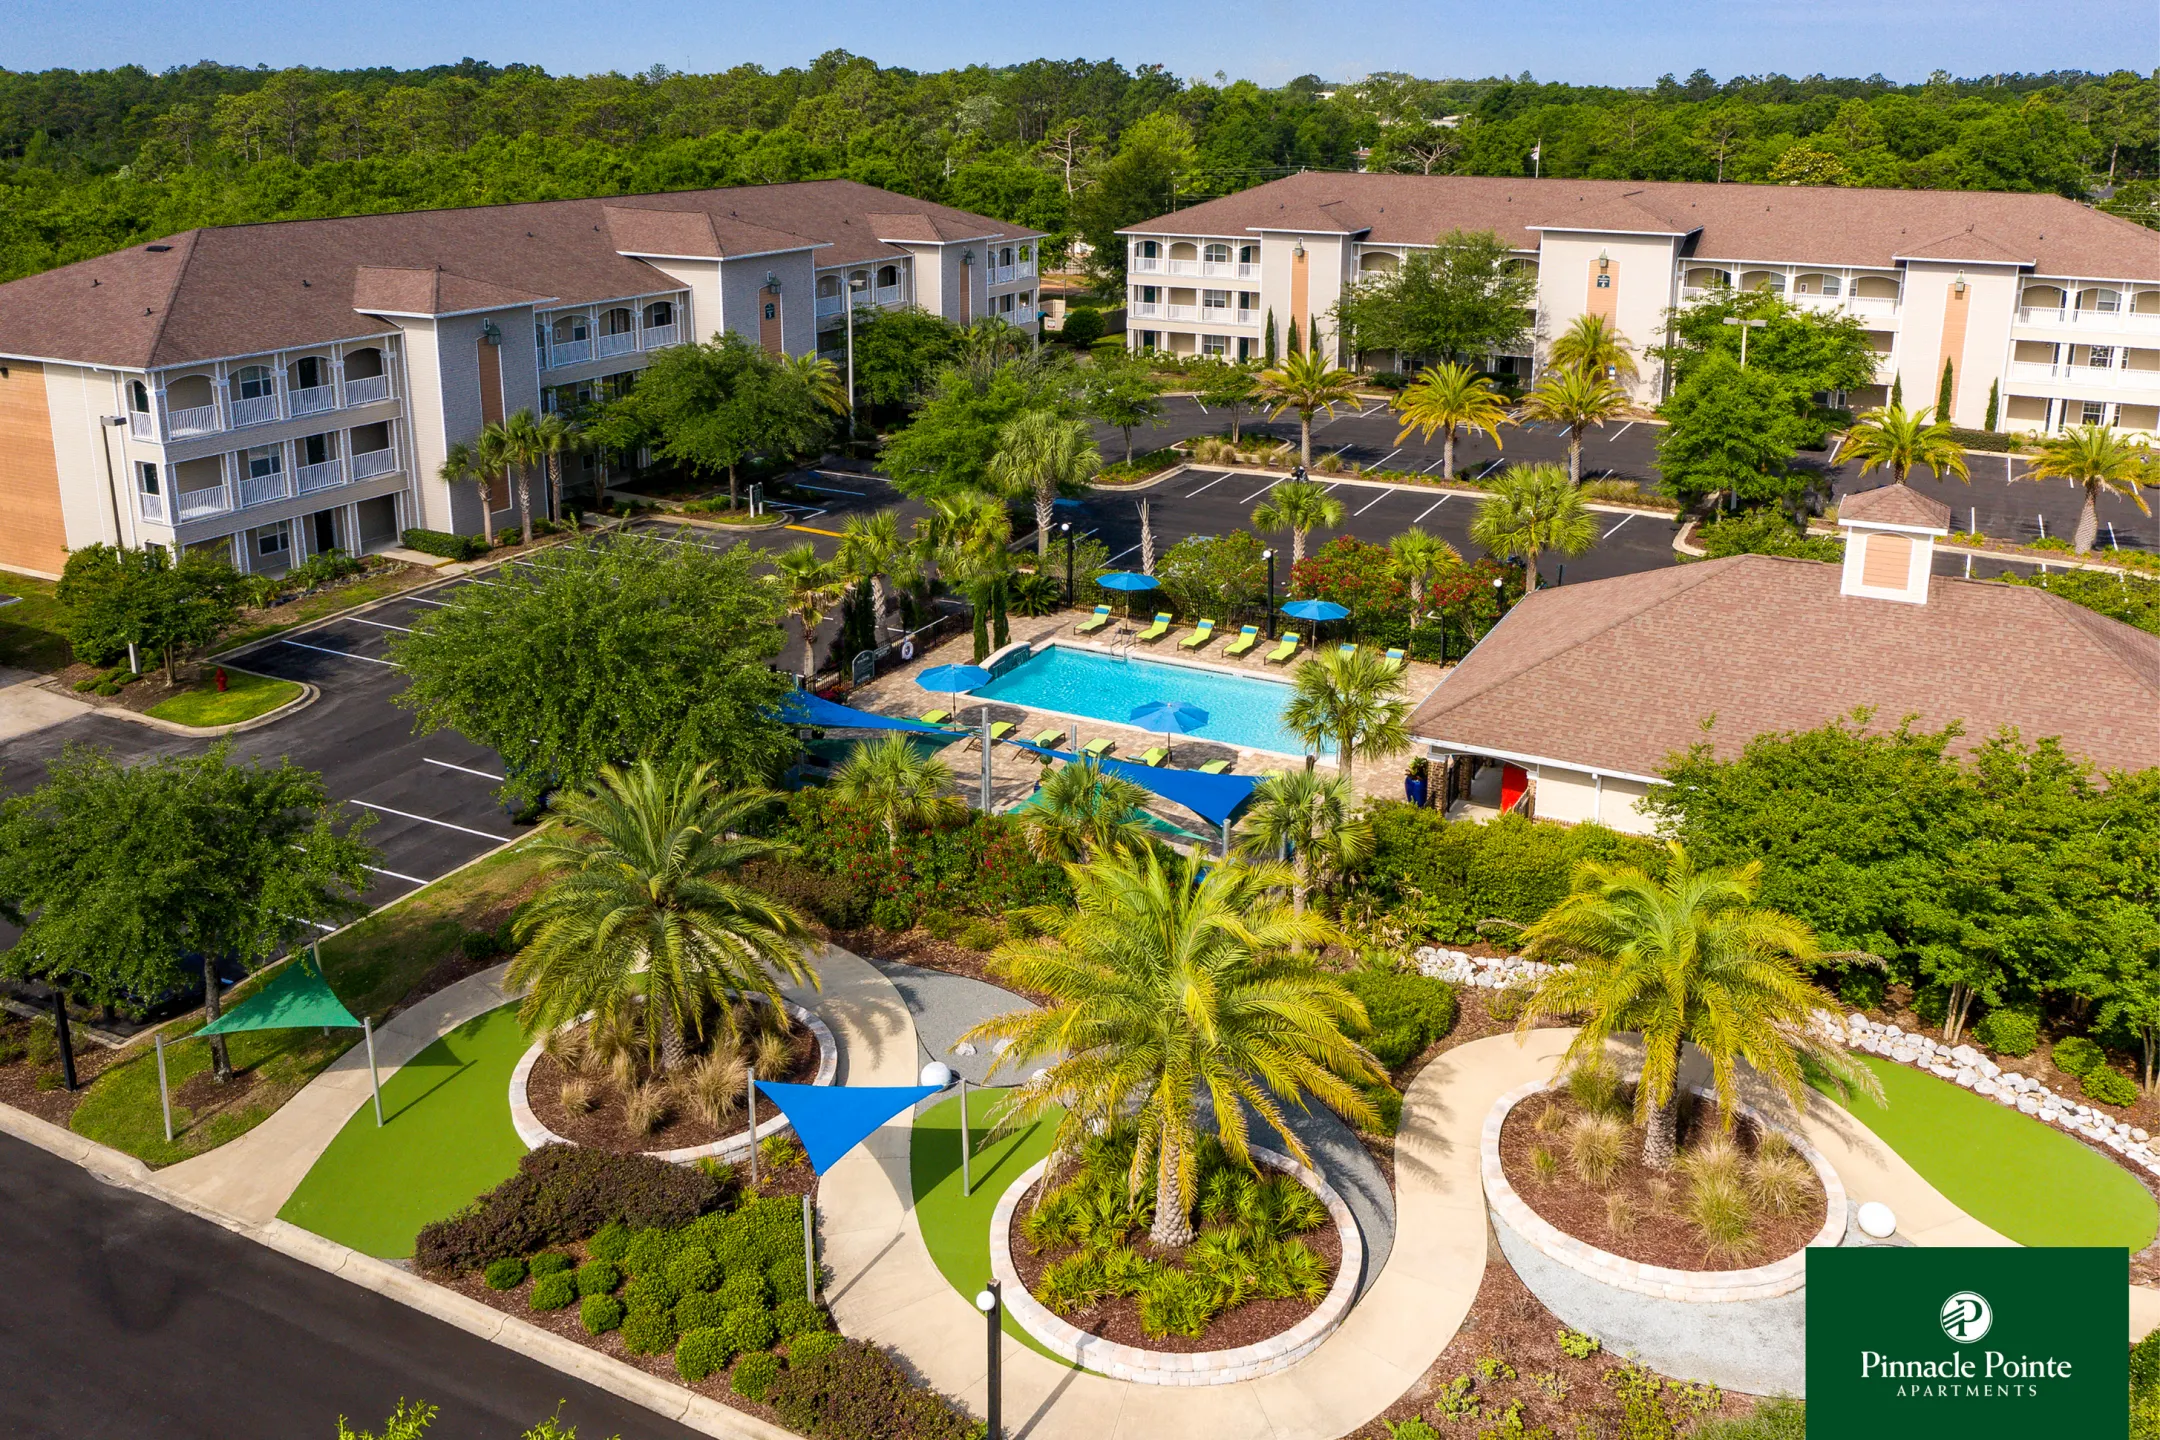 Pinnacle Pointe Apartments - Crestview, FL